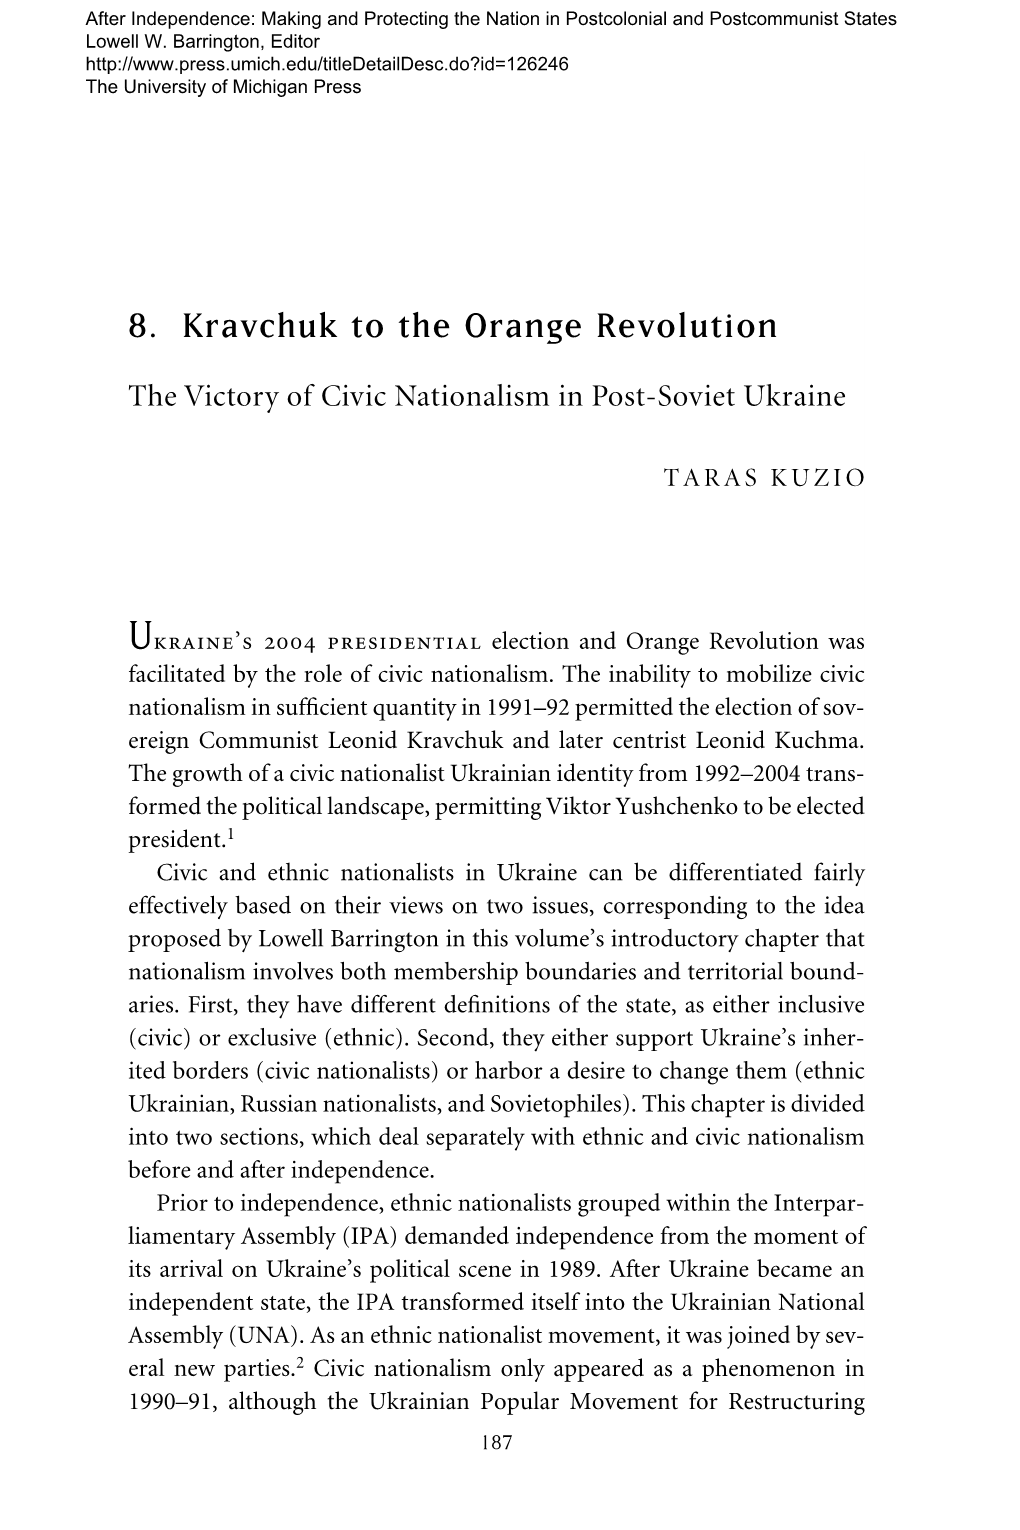 8. Kravchuk to the Orange Revolution